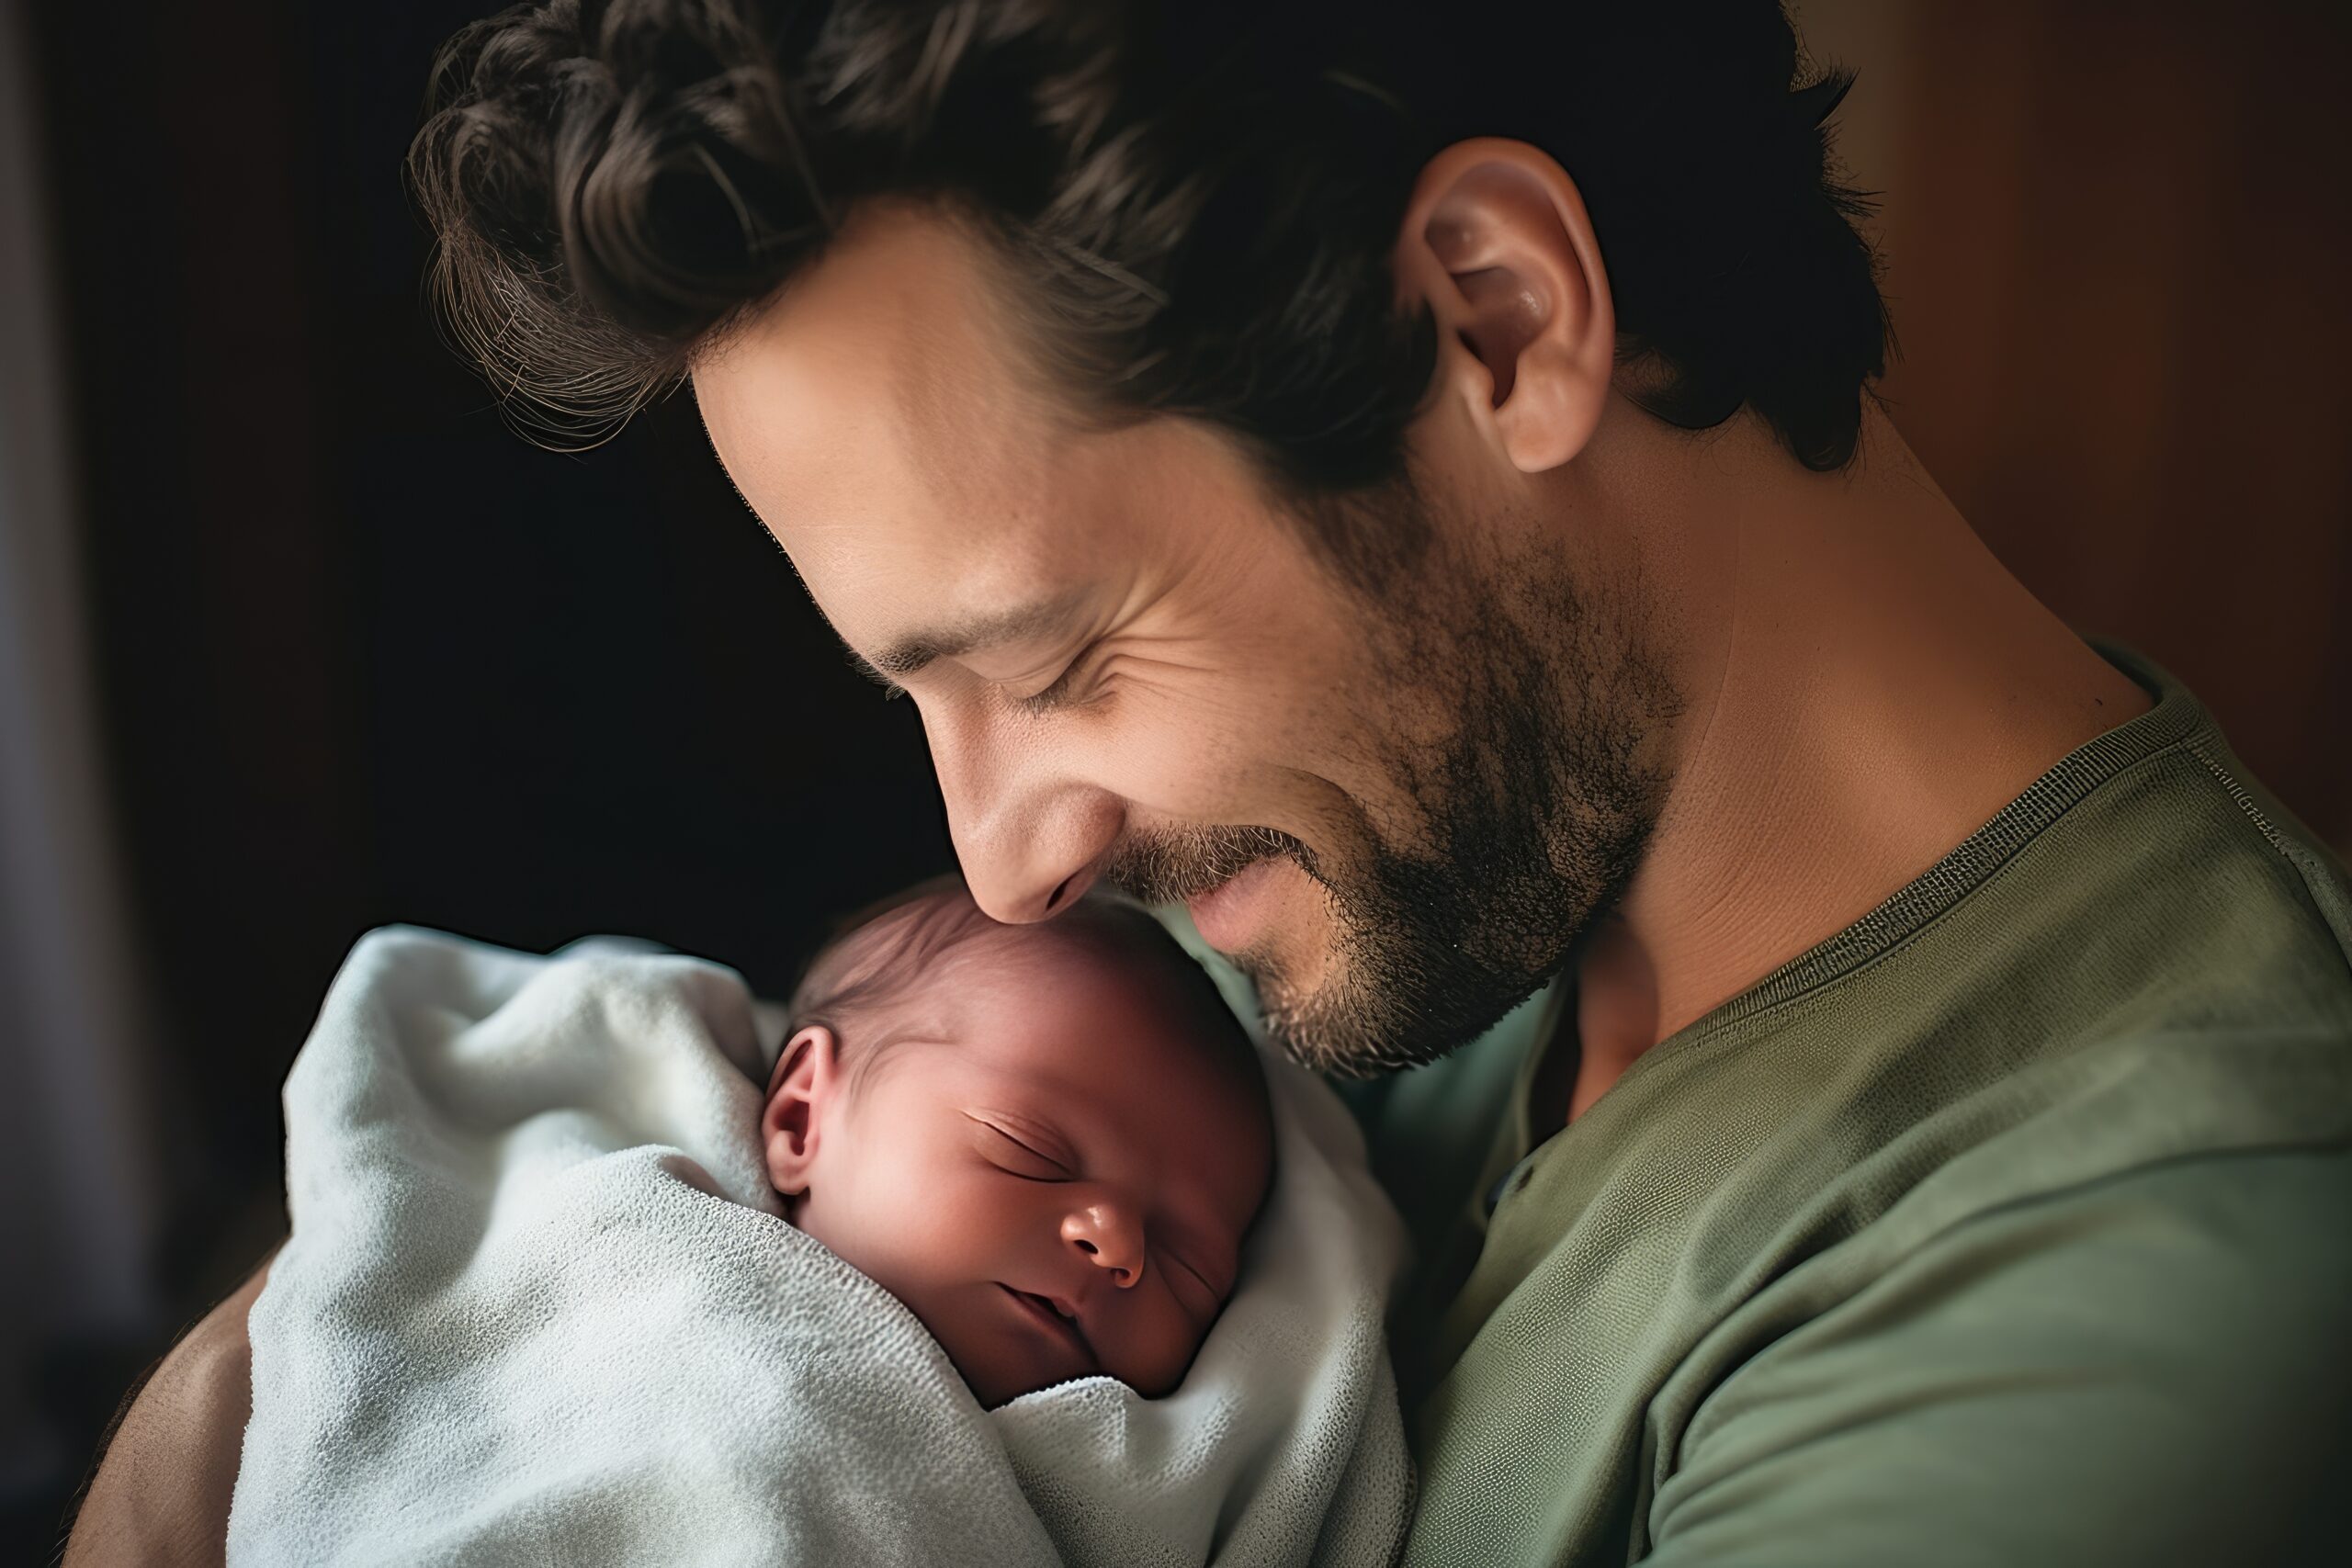 Pai embala seu bebê recém-nascido nos braços